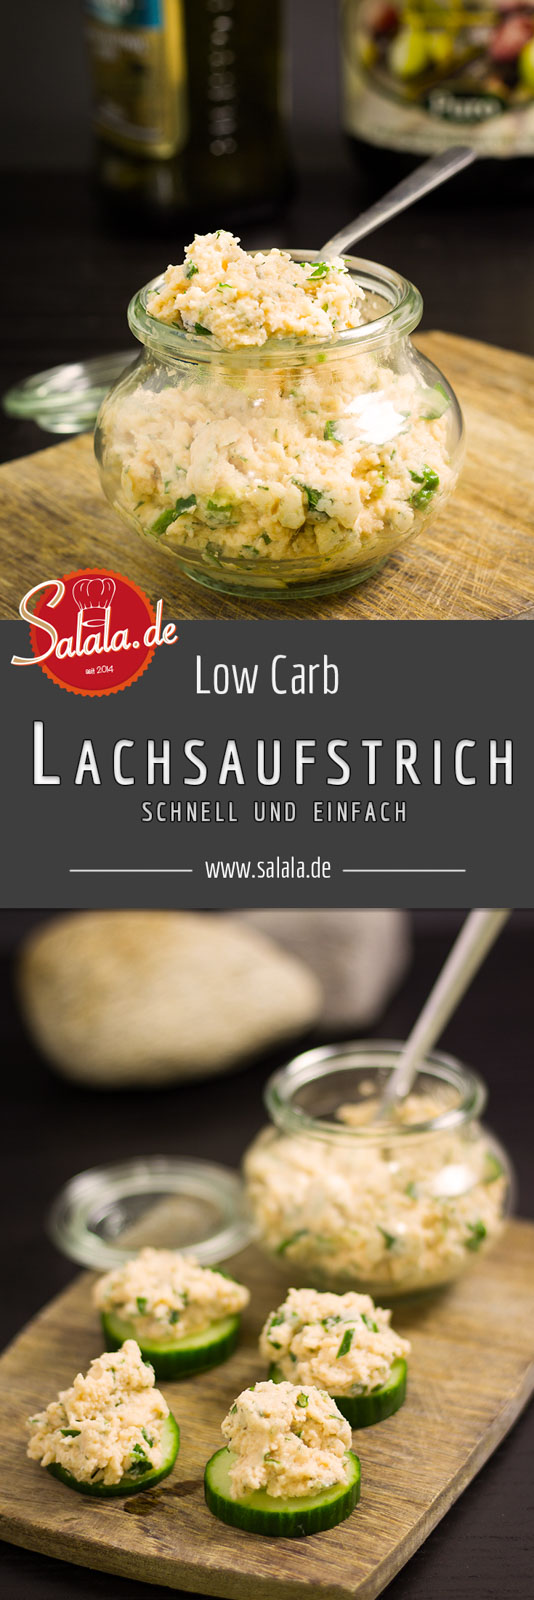 Lachsaufstrich Rezept schnell einfach und Low Carb - by salala.de - Frischkäse Lachs Brotaufstrich Low Carb selber machen zum Frühstück